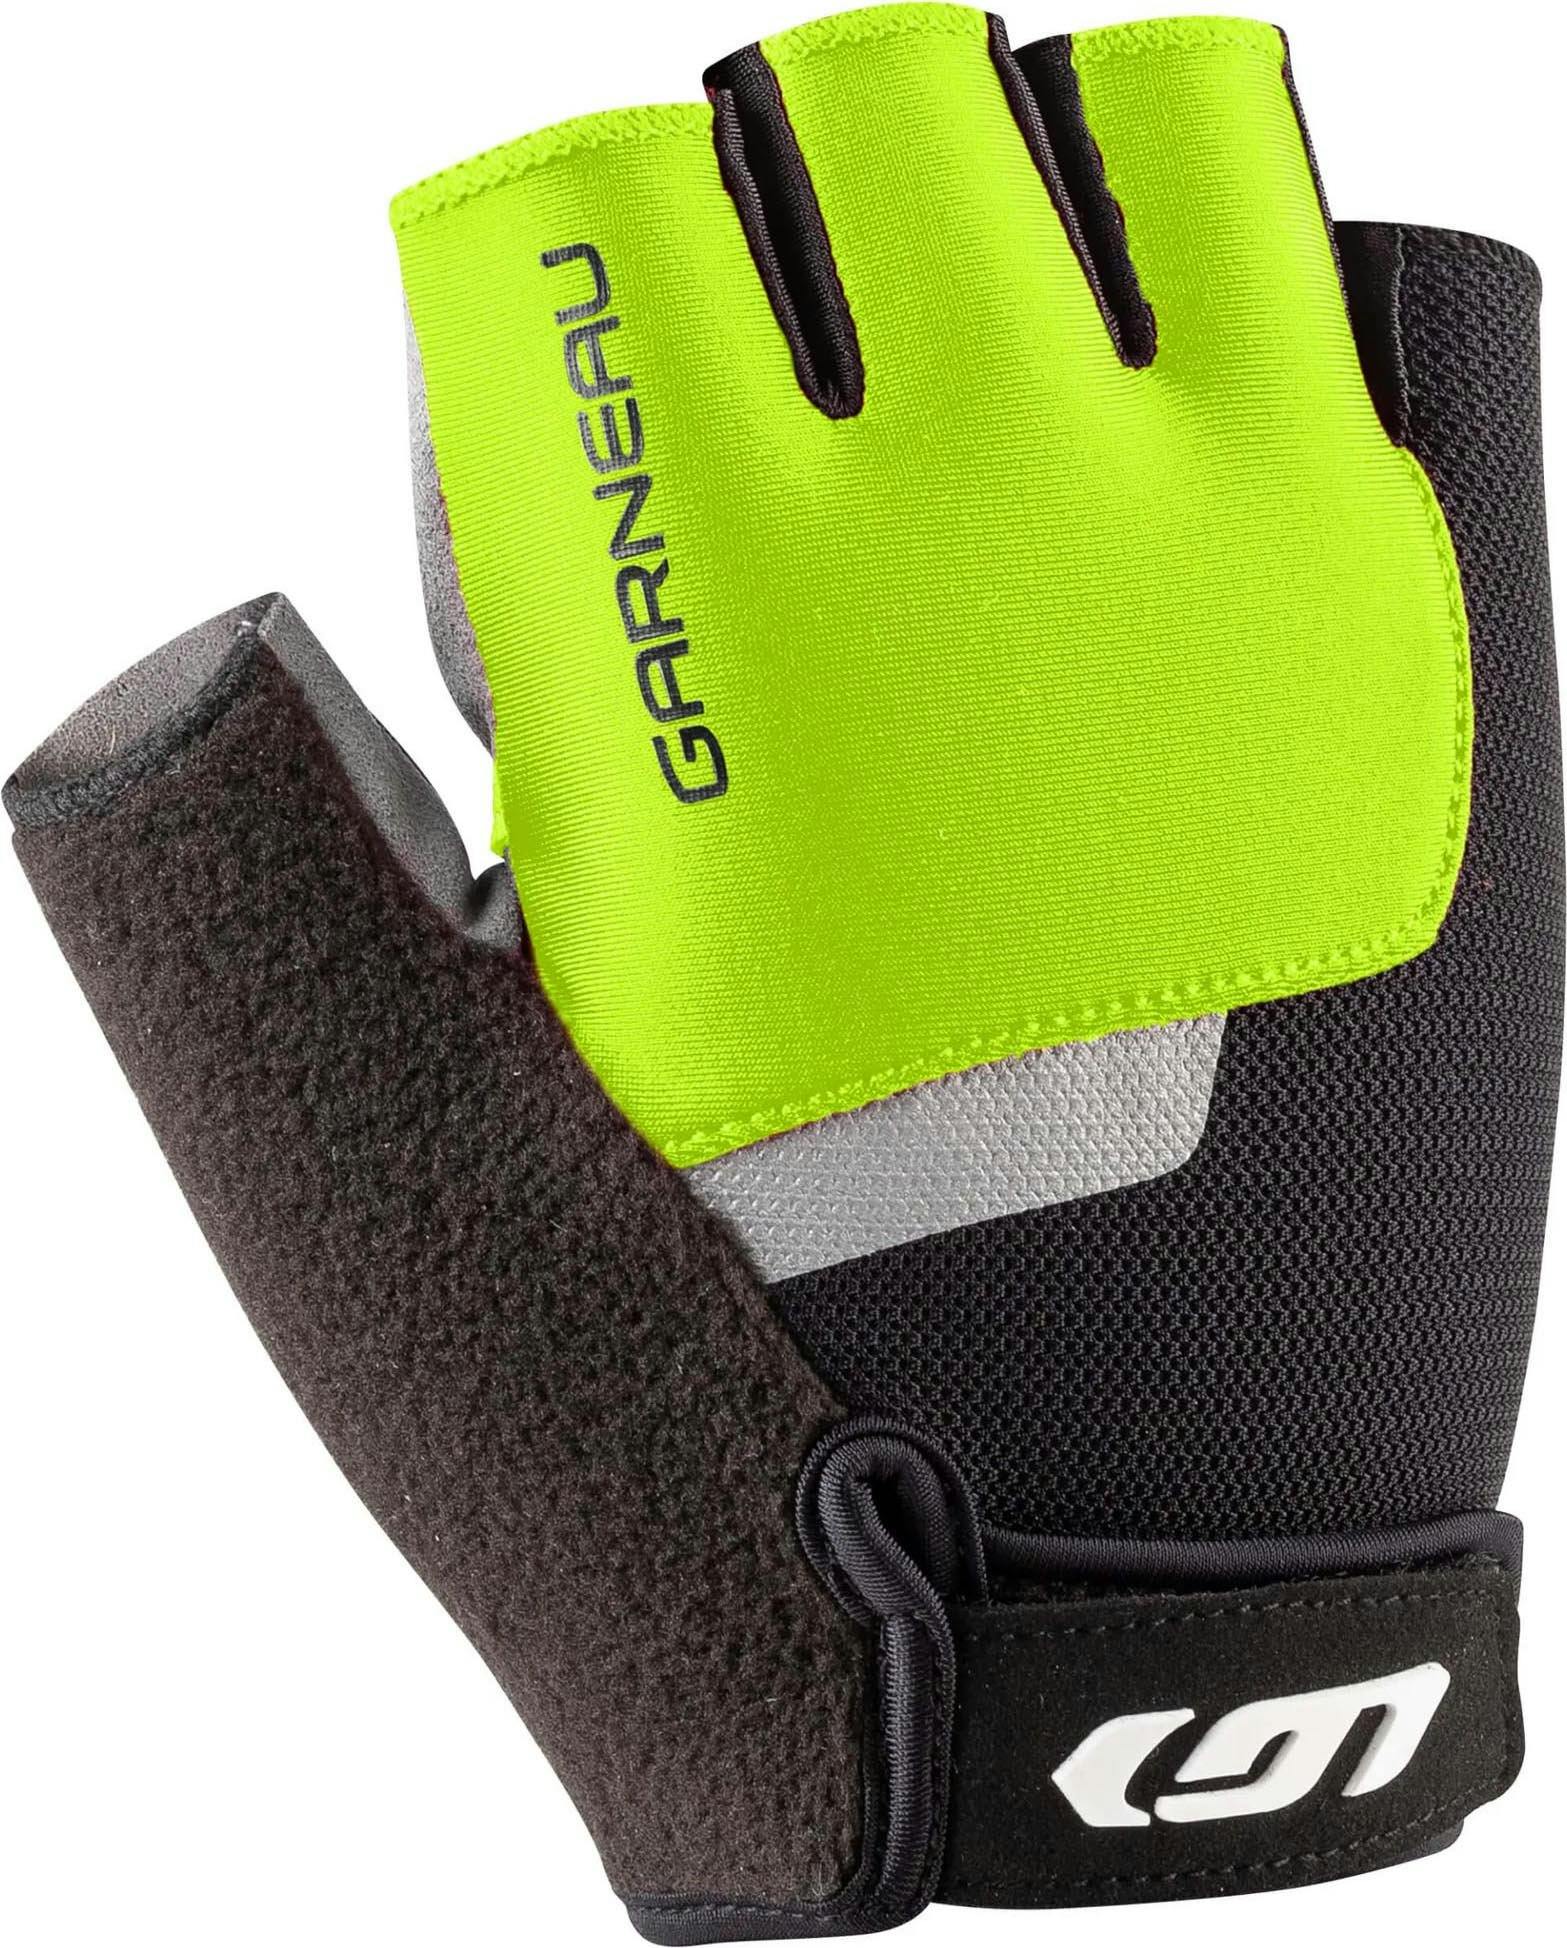 Product image for Biogel Rx Gloves - Men's